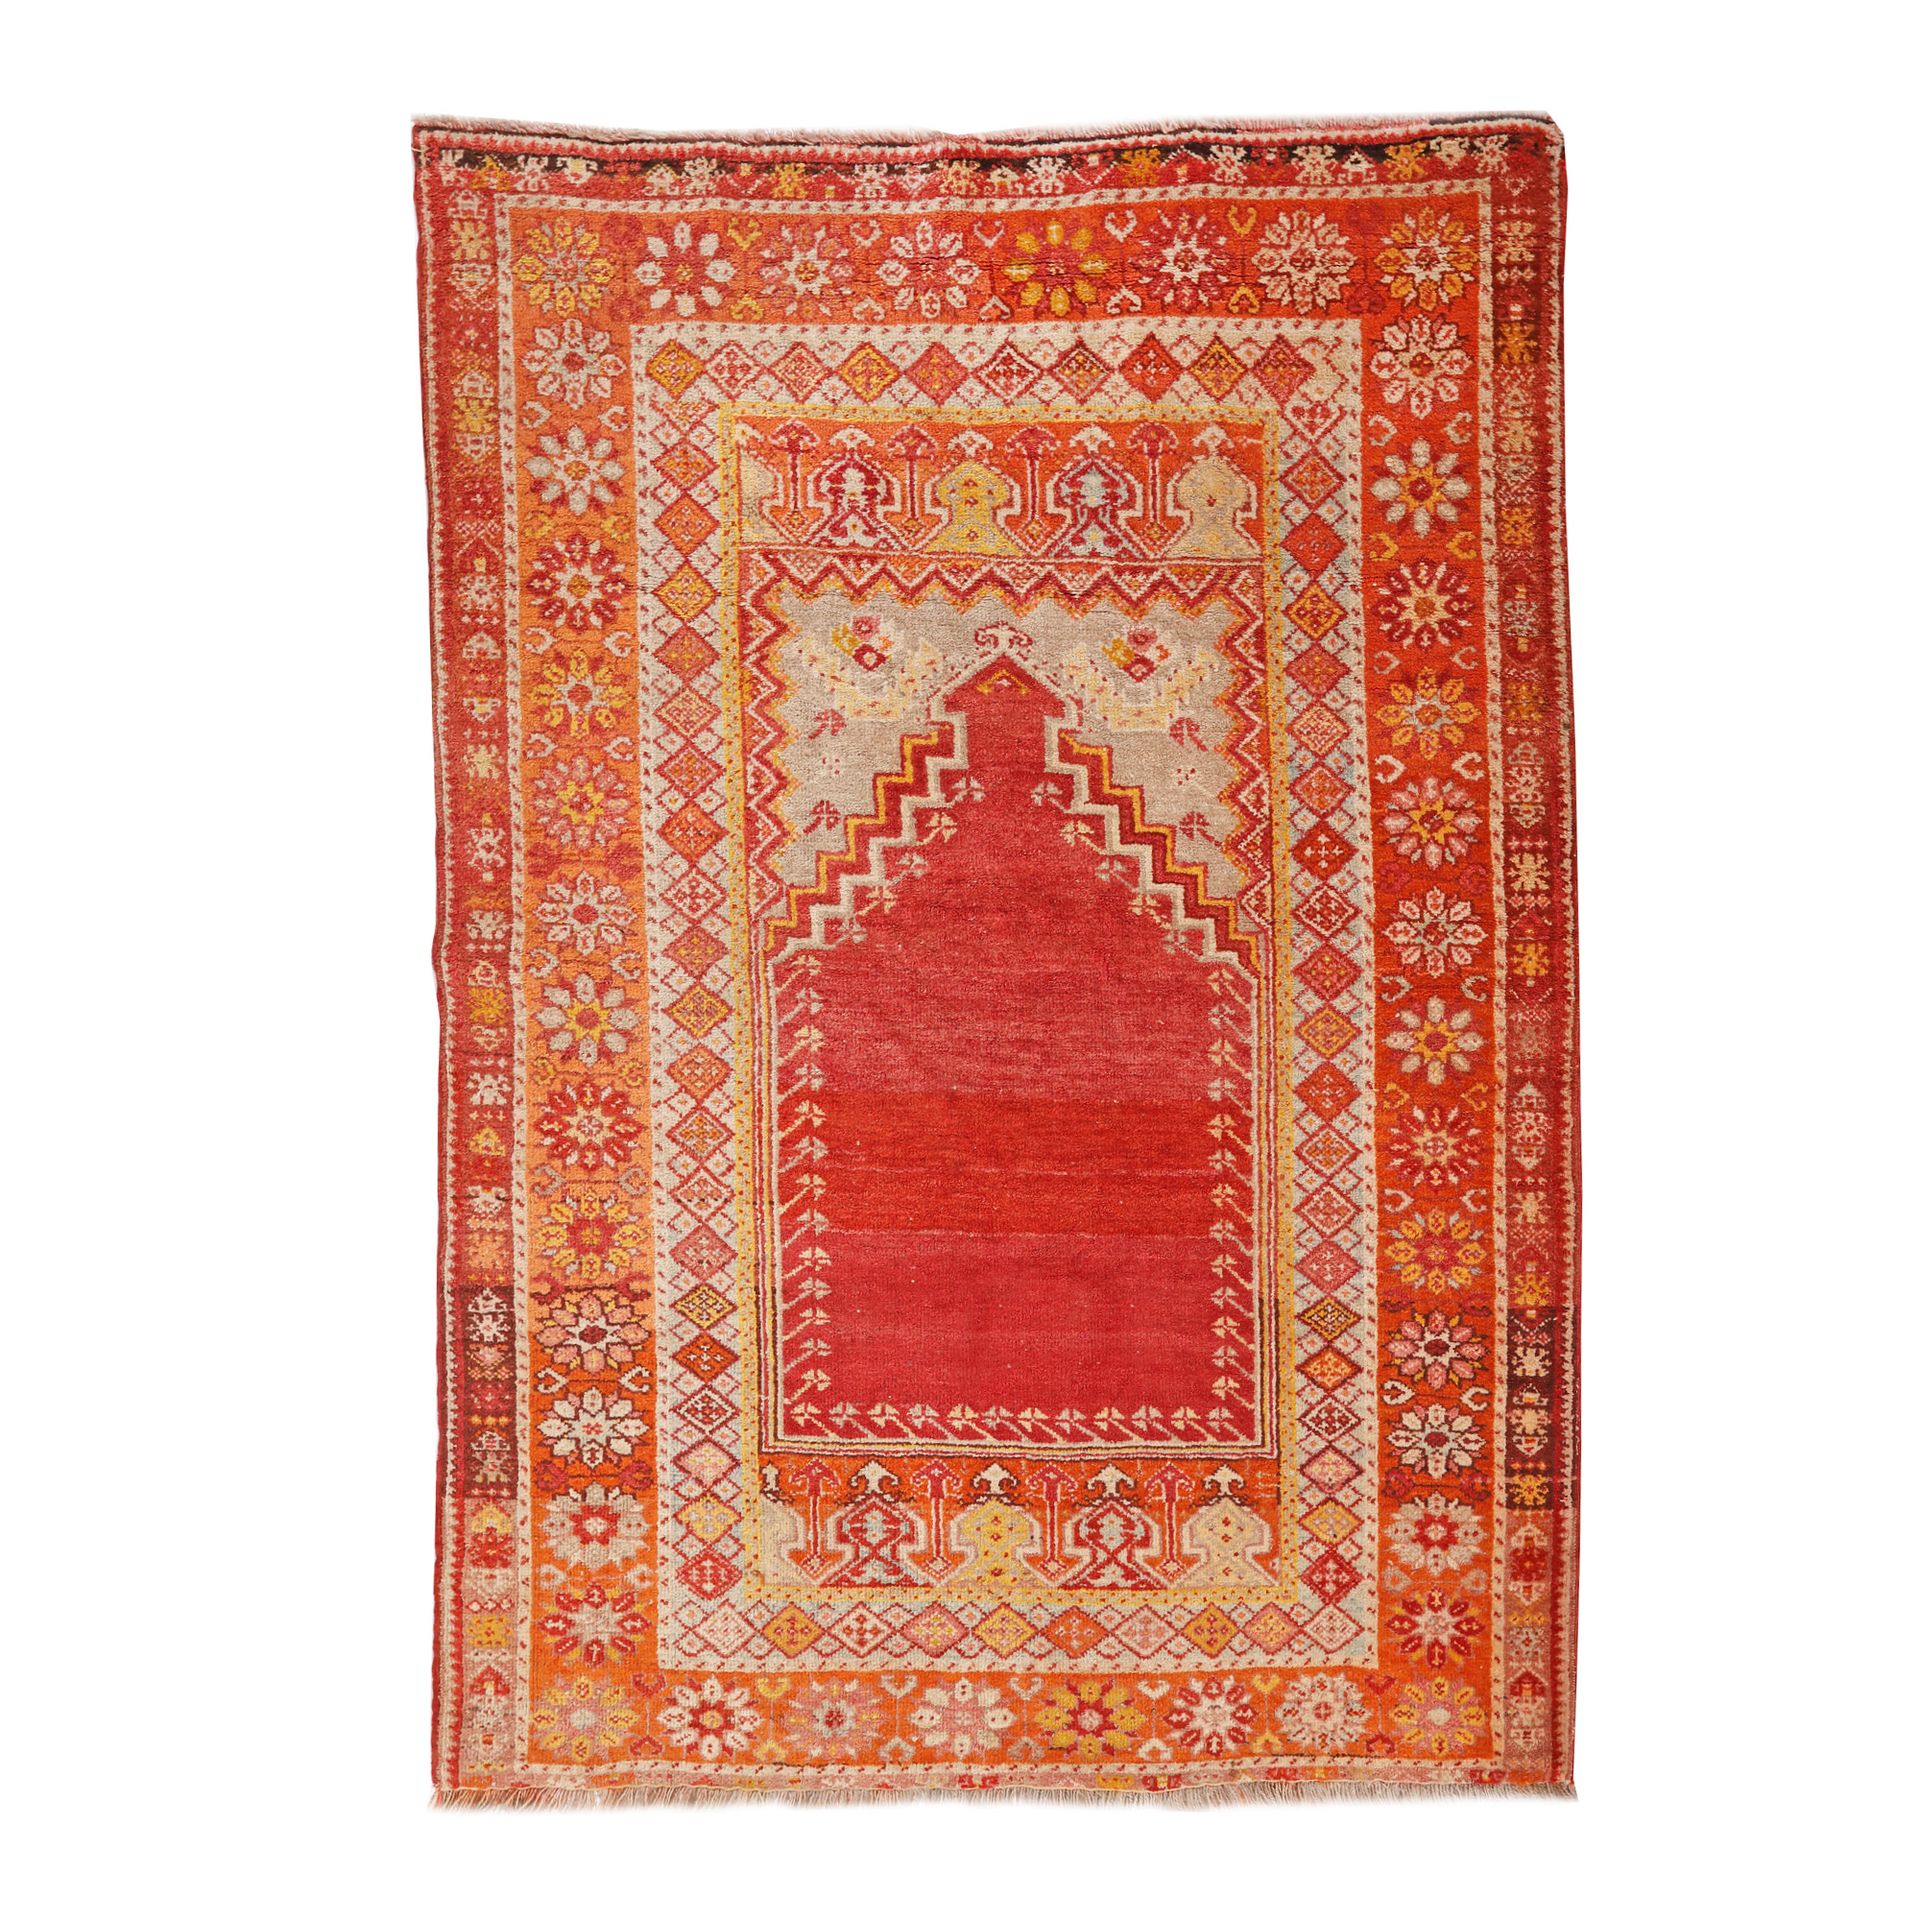 Kirsehir prayer wool carpet, Turkey, ca. 1850 wool on wool warp, 180 × 127 cm